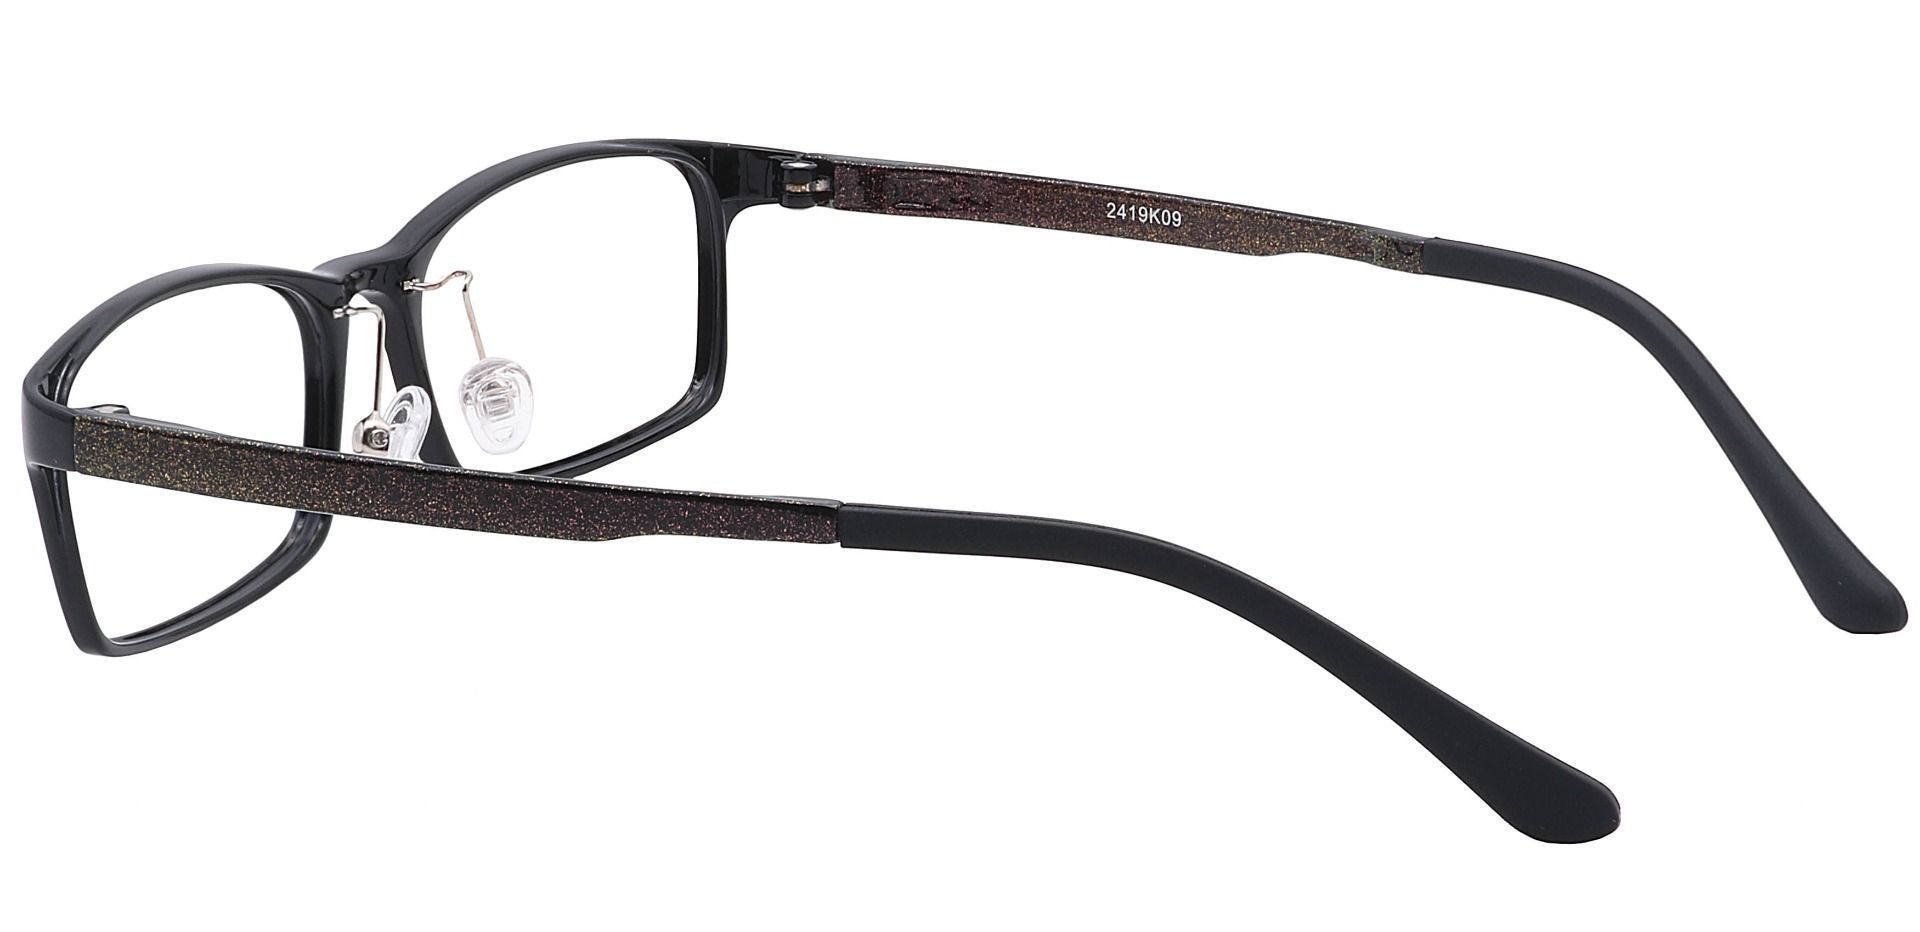 Hydra Rectangle Prescription Glasses - Black